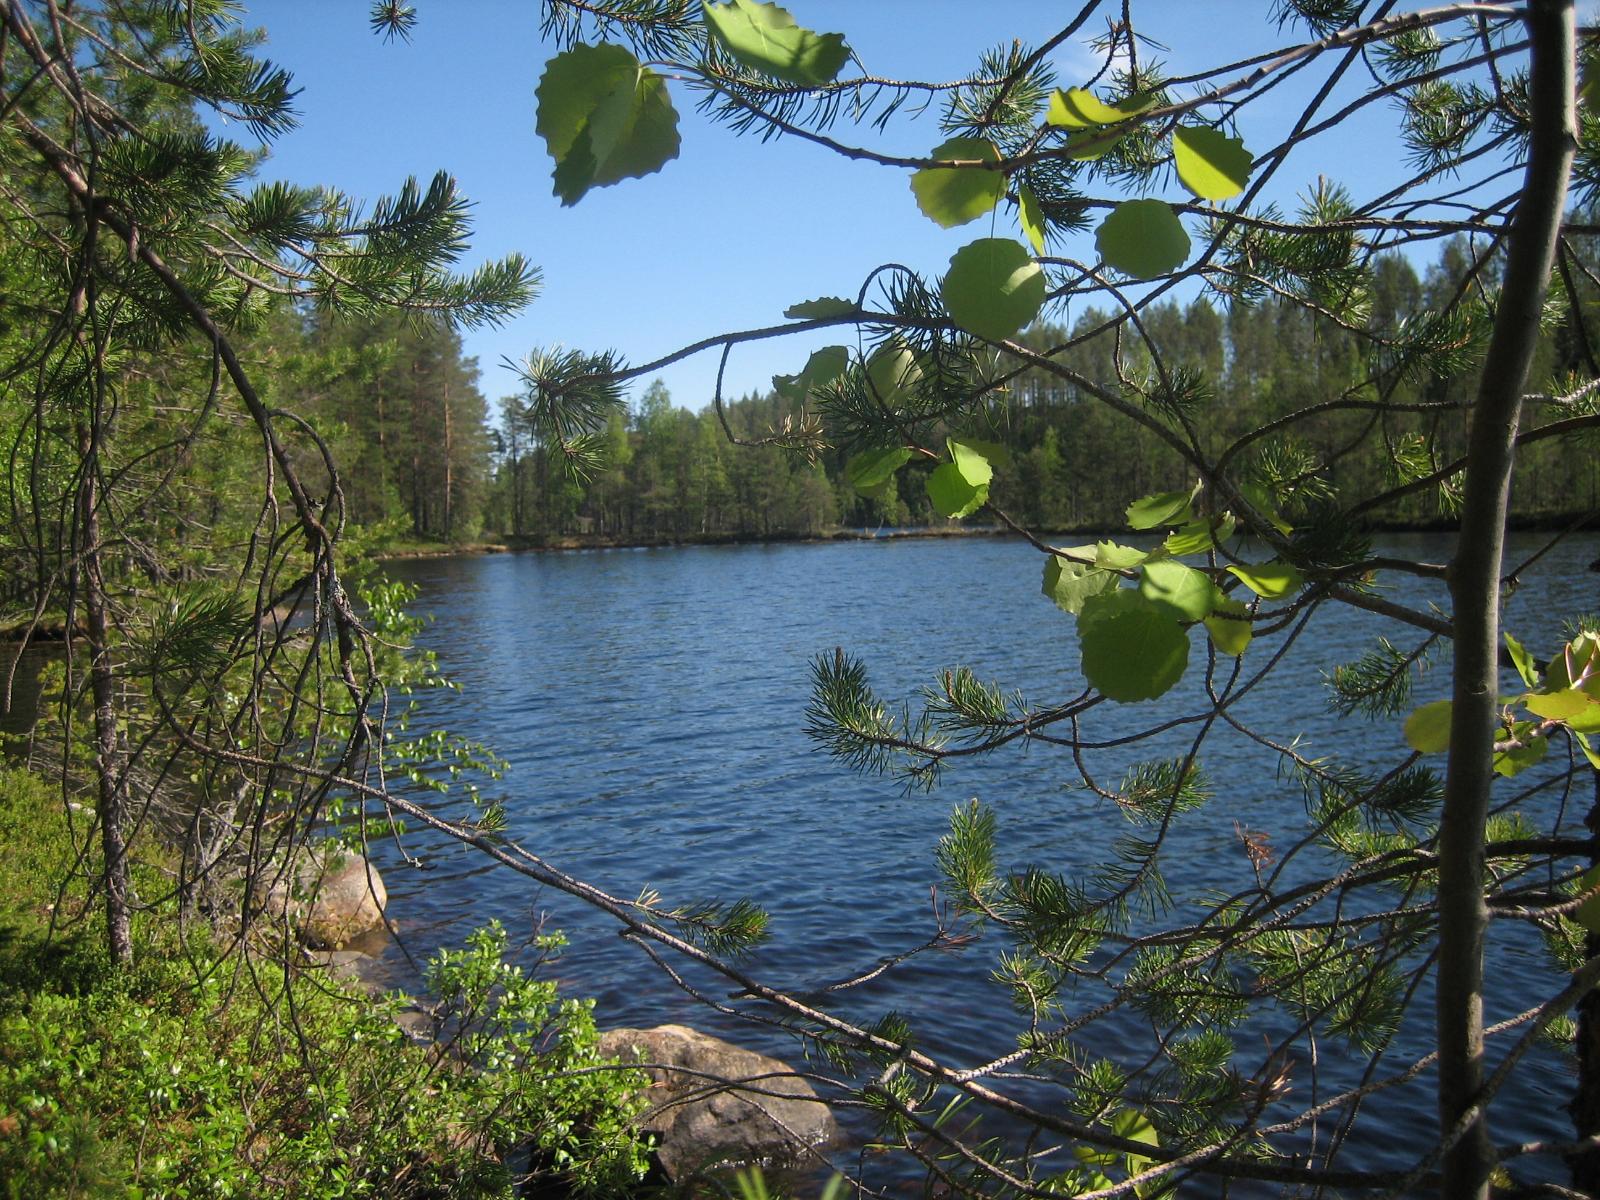 Haavan ja männyn oksat reunustavat kesäistä järvimaisemaa. Rantavedessä on kiviä.